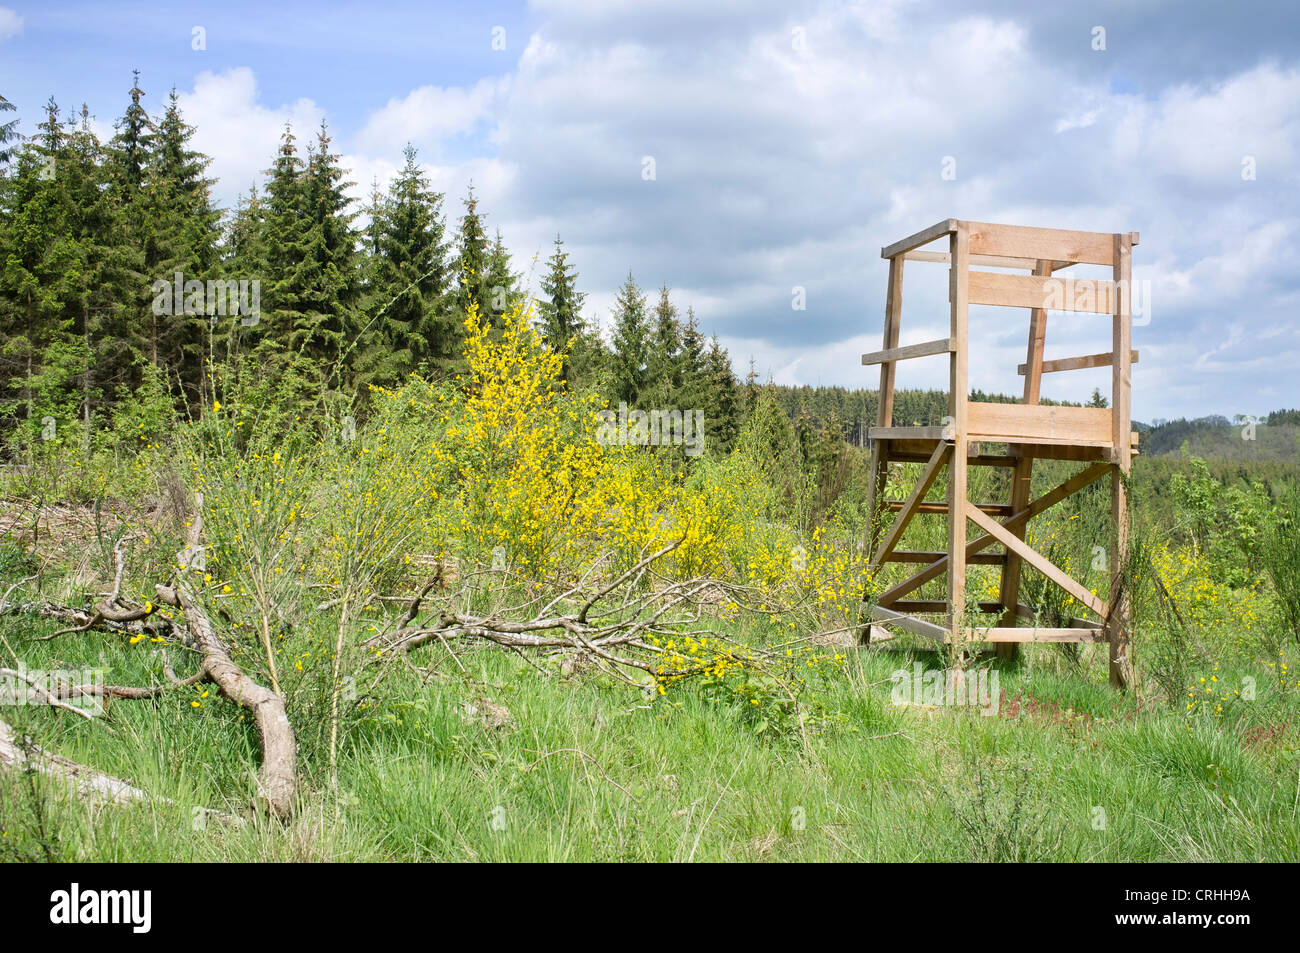 Paysage de campagne avec une chaise haute en bois, utilisé pour la chasse Banque D'Images